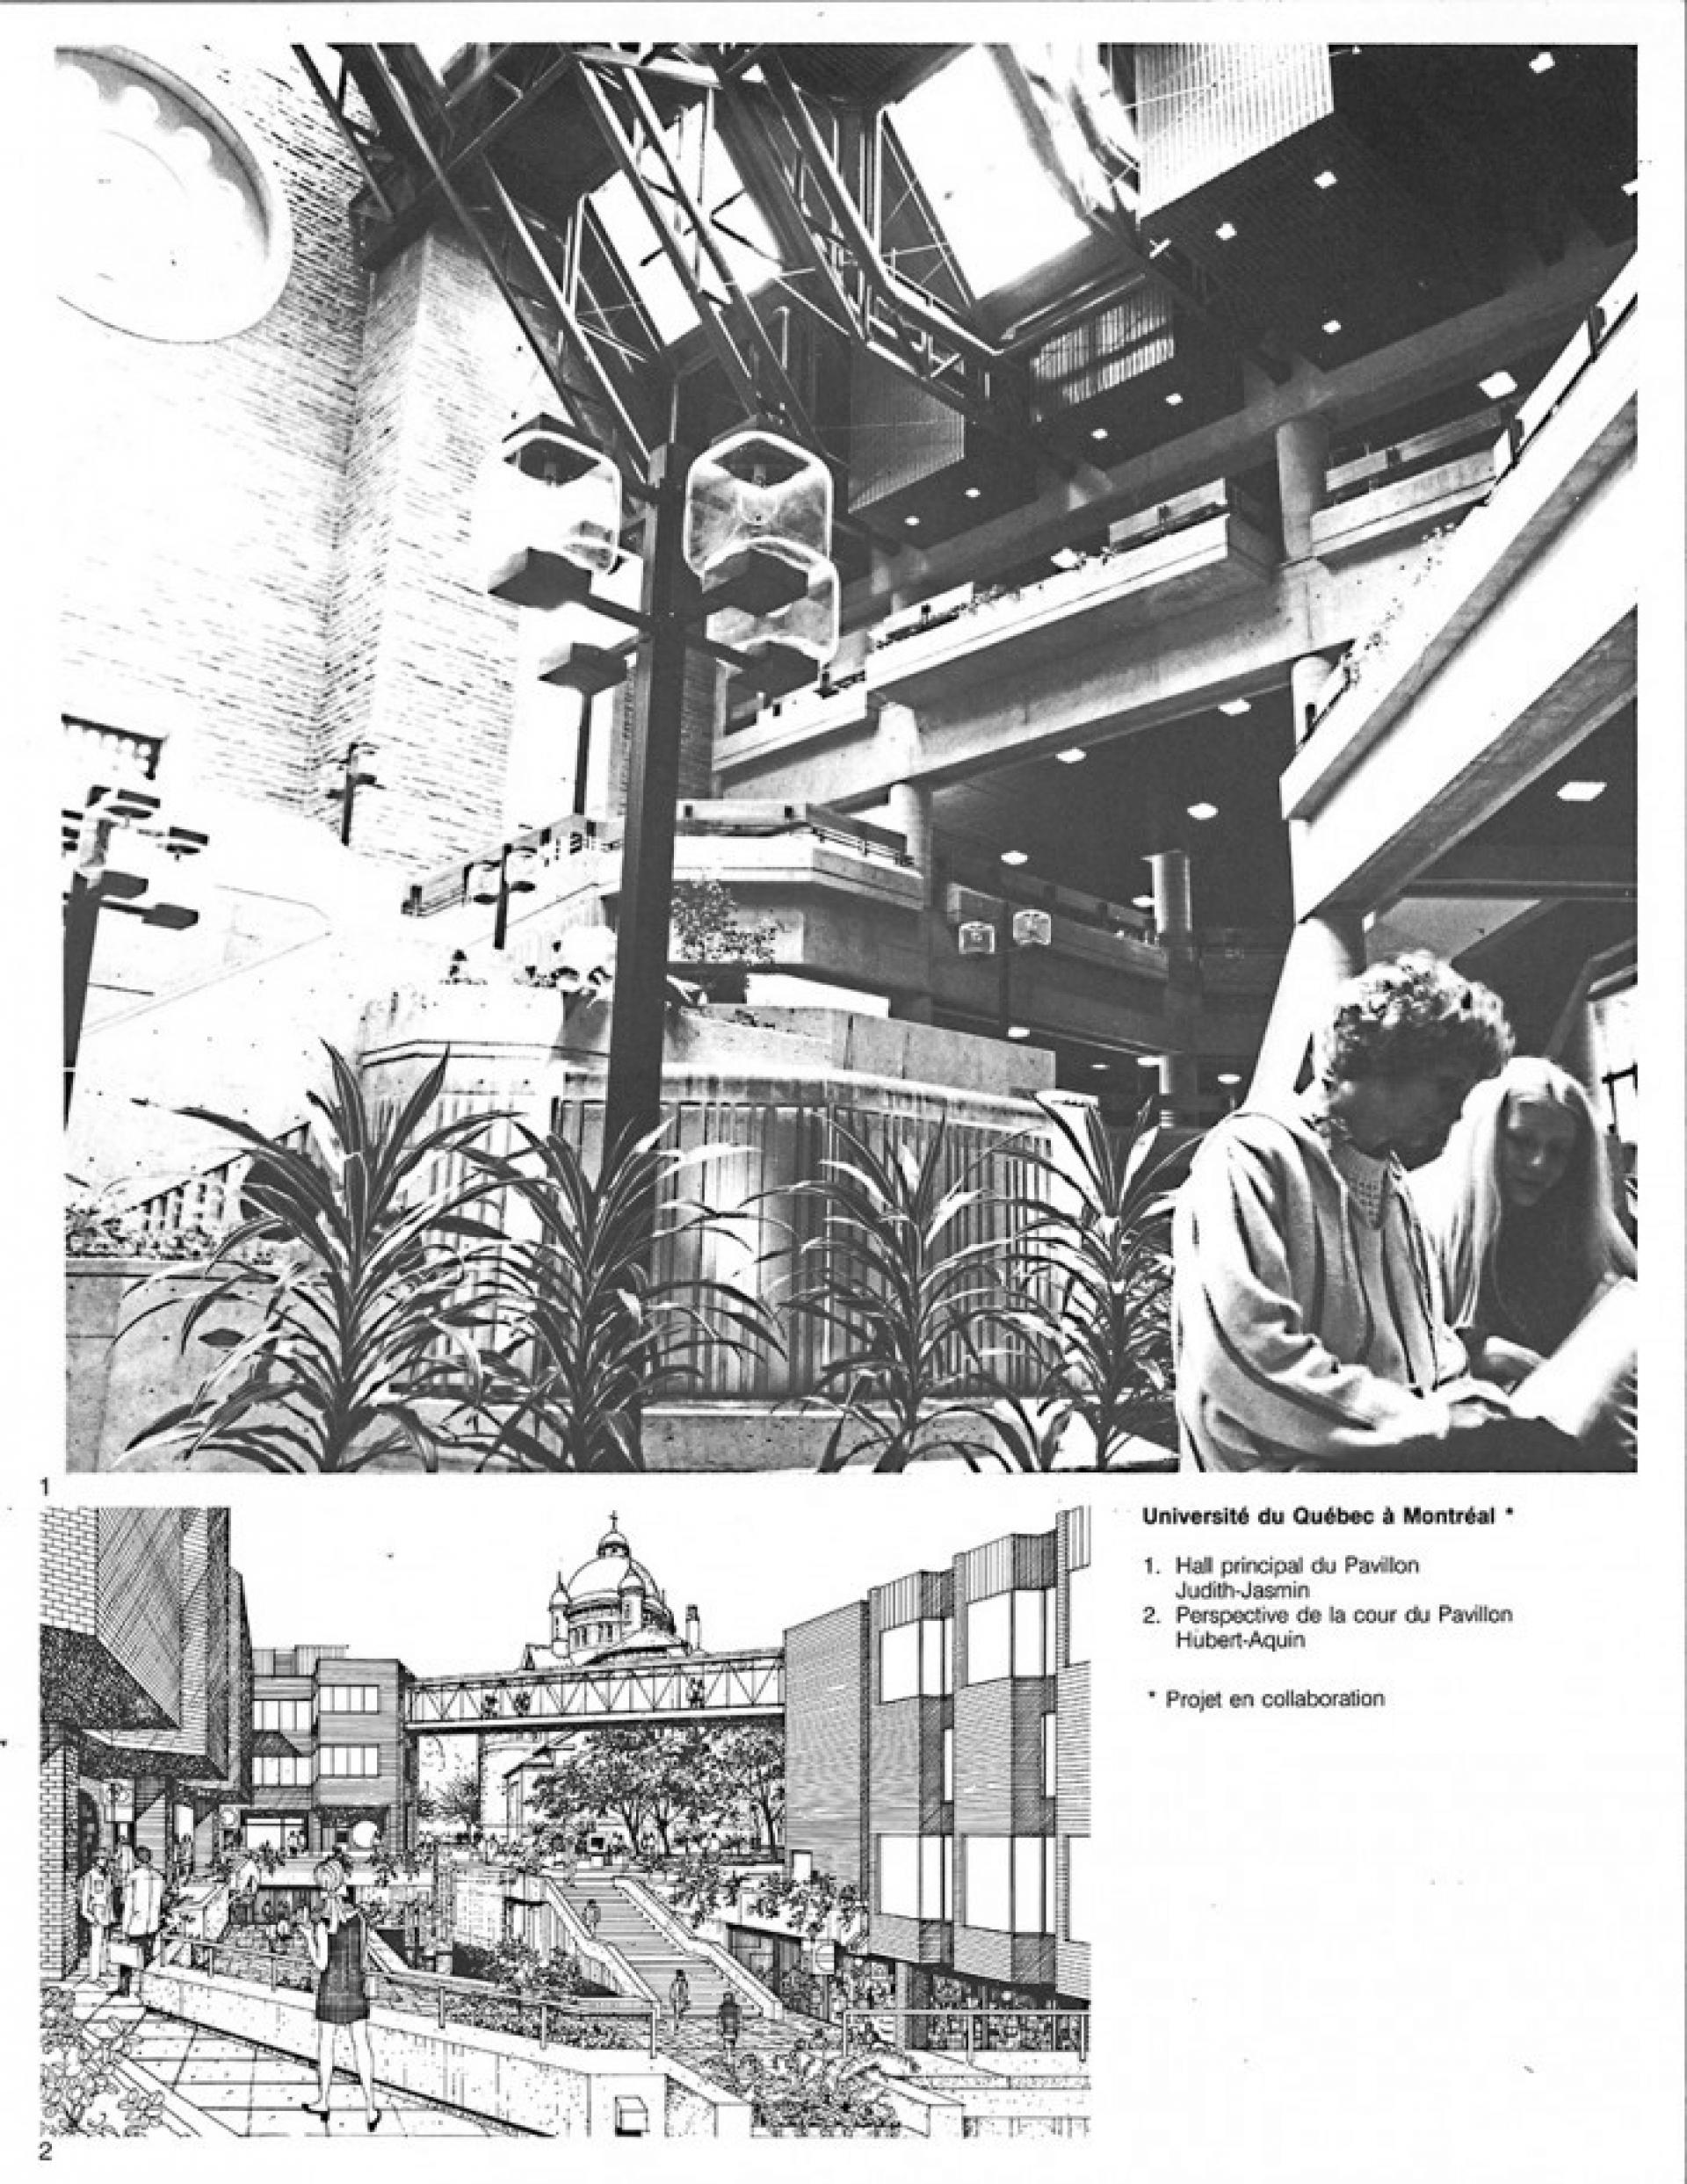 Pavillons Judith-Jasmin et Hubert-Aquin UQAM, Montréal (1974-1979) by Jodoin Pratte Lamarre and Dimitri Dimakopoulos. | Photo via © Jodoin Lamarre Pratte Architects